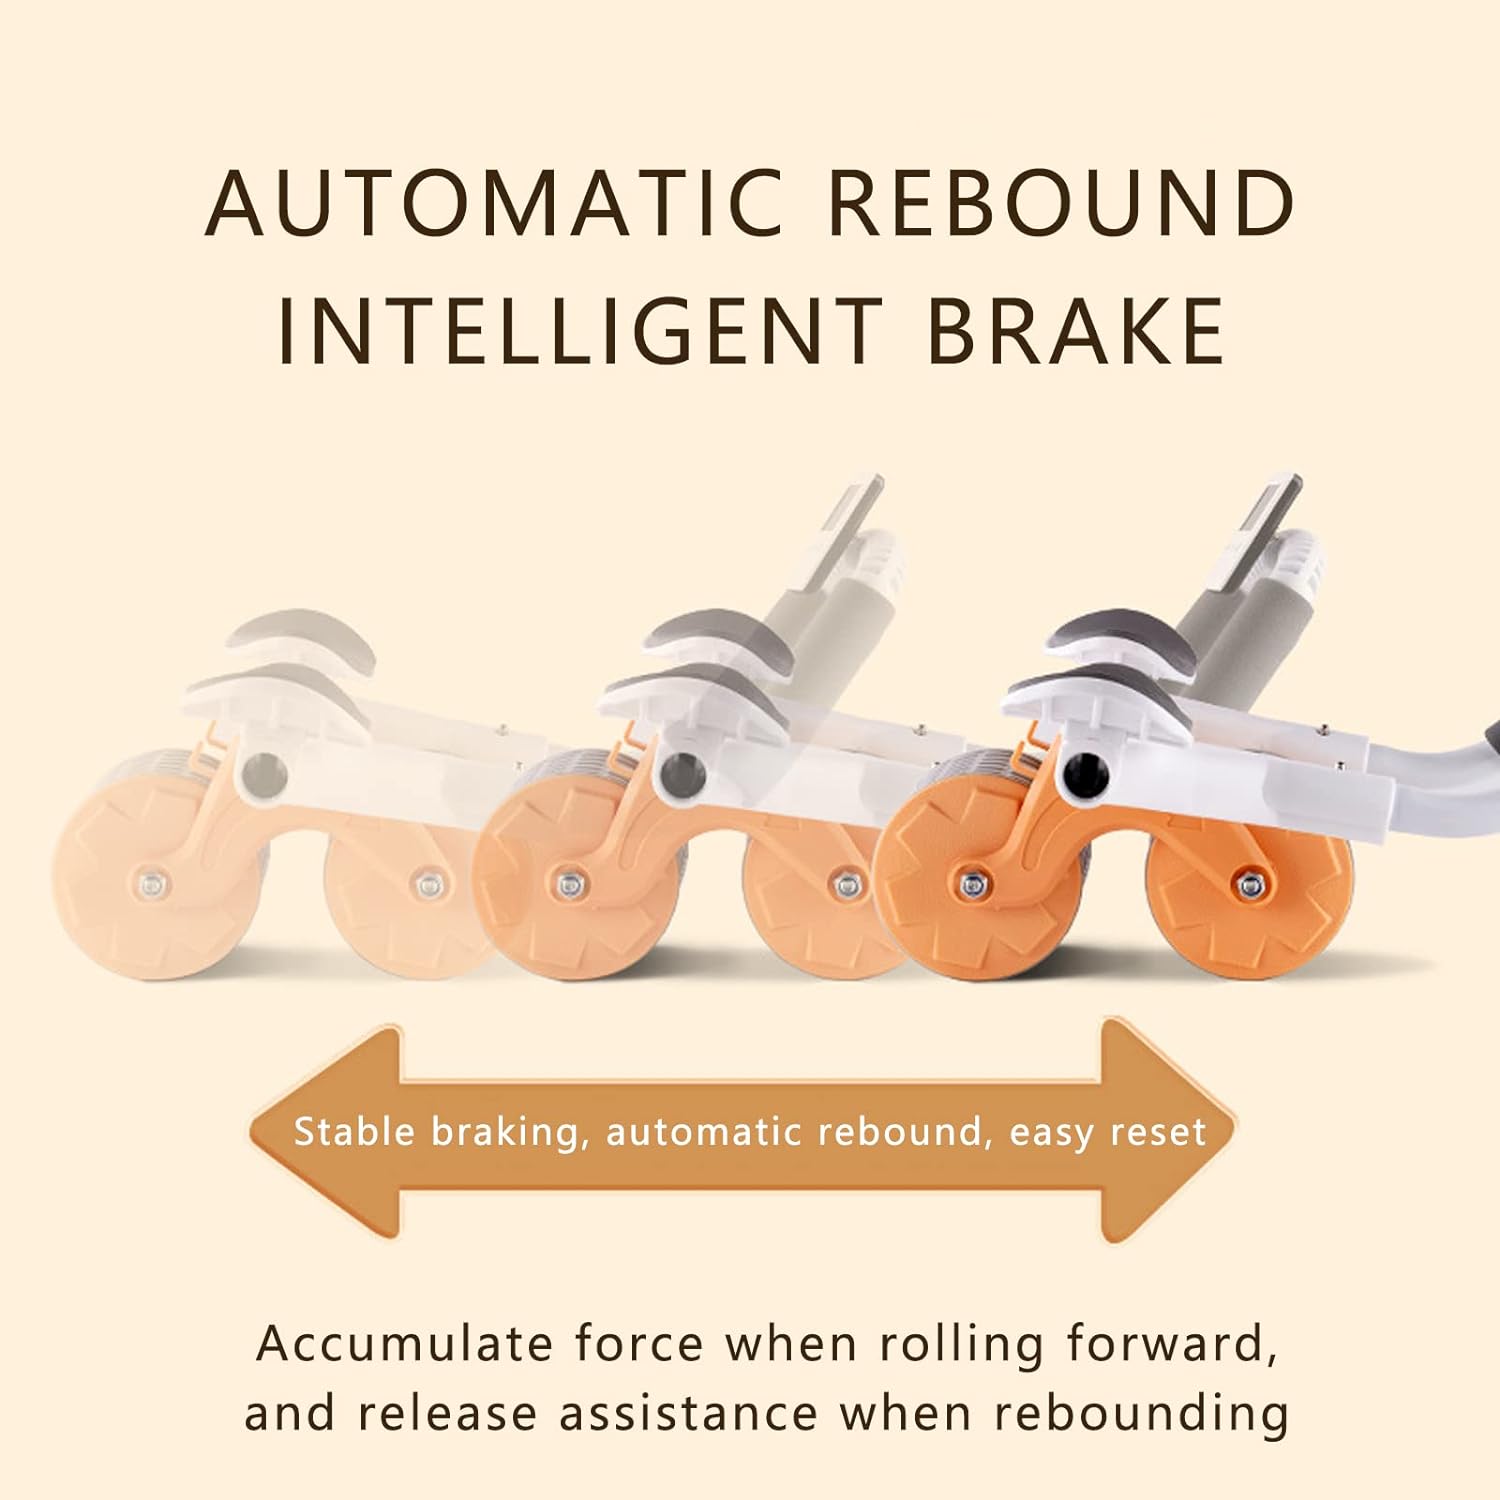 Support Rebound Abdominal Wheel - Navio Store